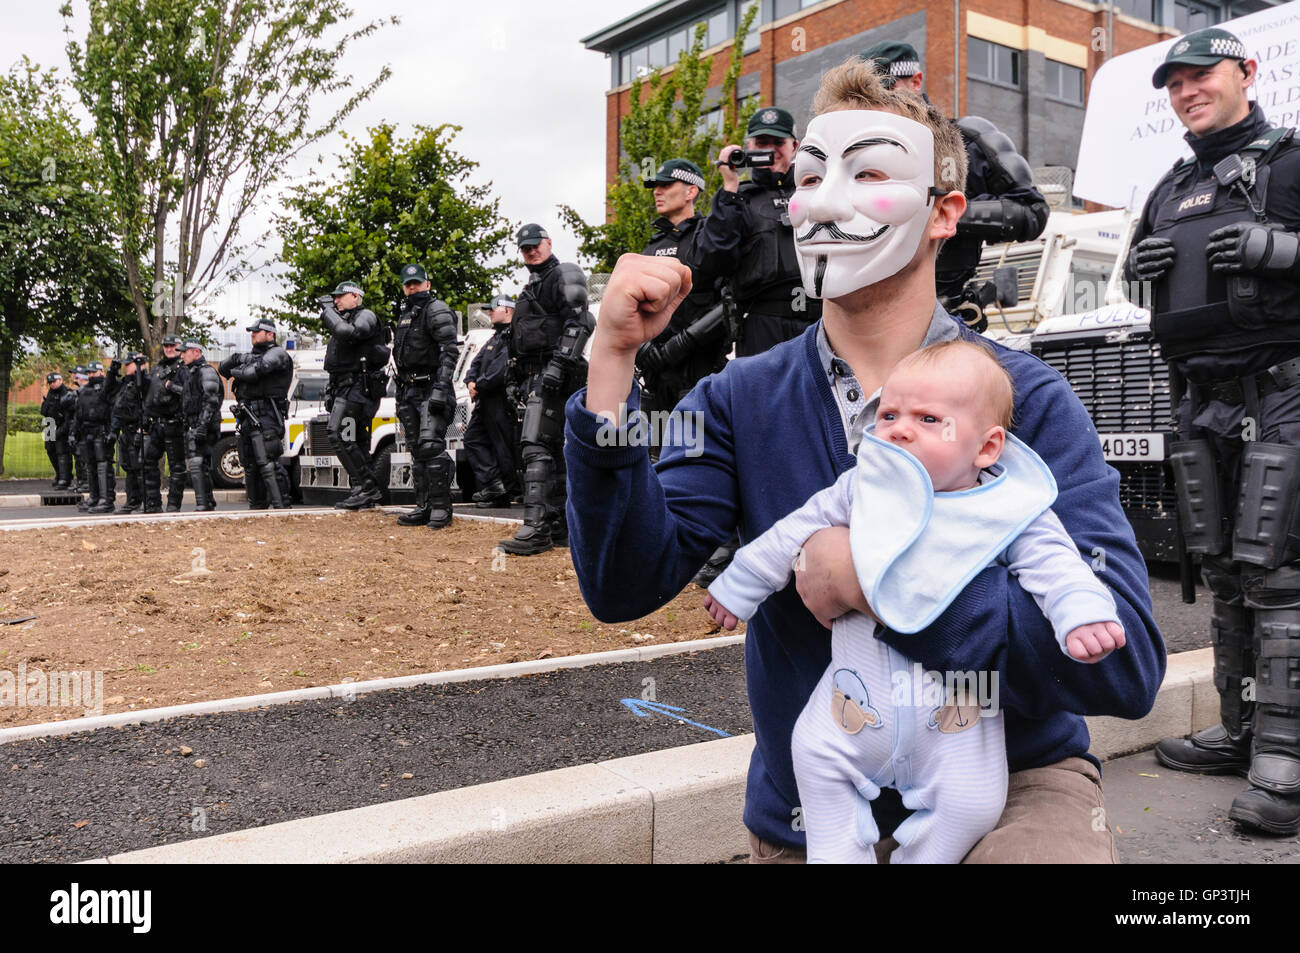 Ein Mann trägt einen 'Anonymous' Guy Fawkes-Maske, und hält ein Baby gibt  einen trotzigen Gruß vor einer Reihe von PSNI Polizisten Stockfotografie -  Alamy